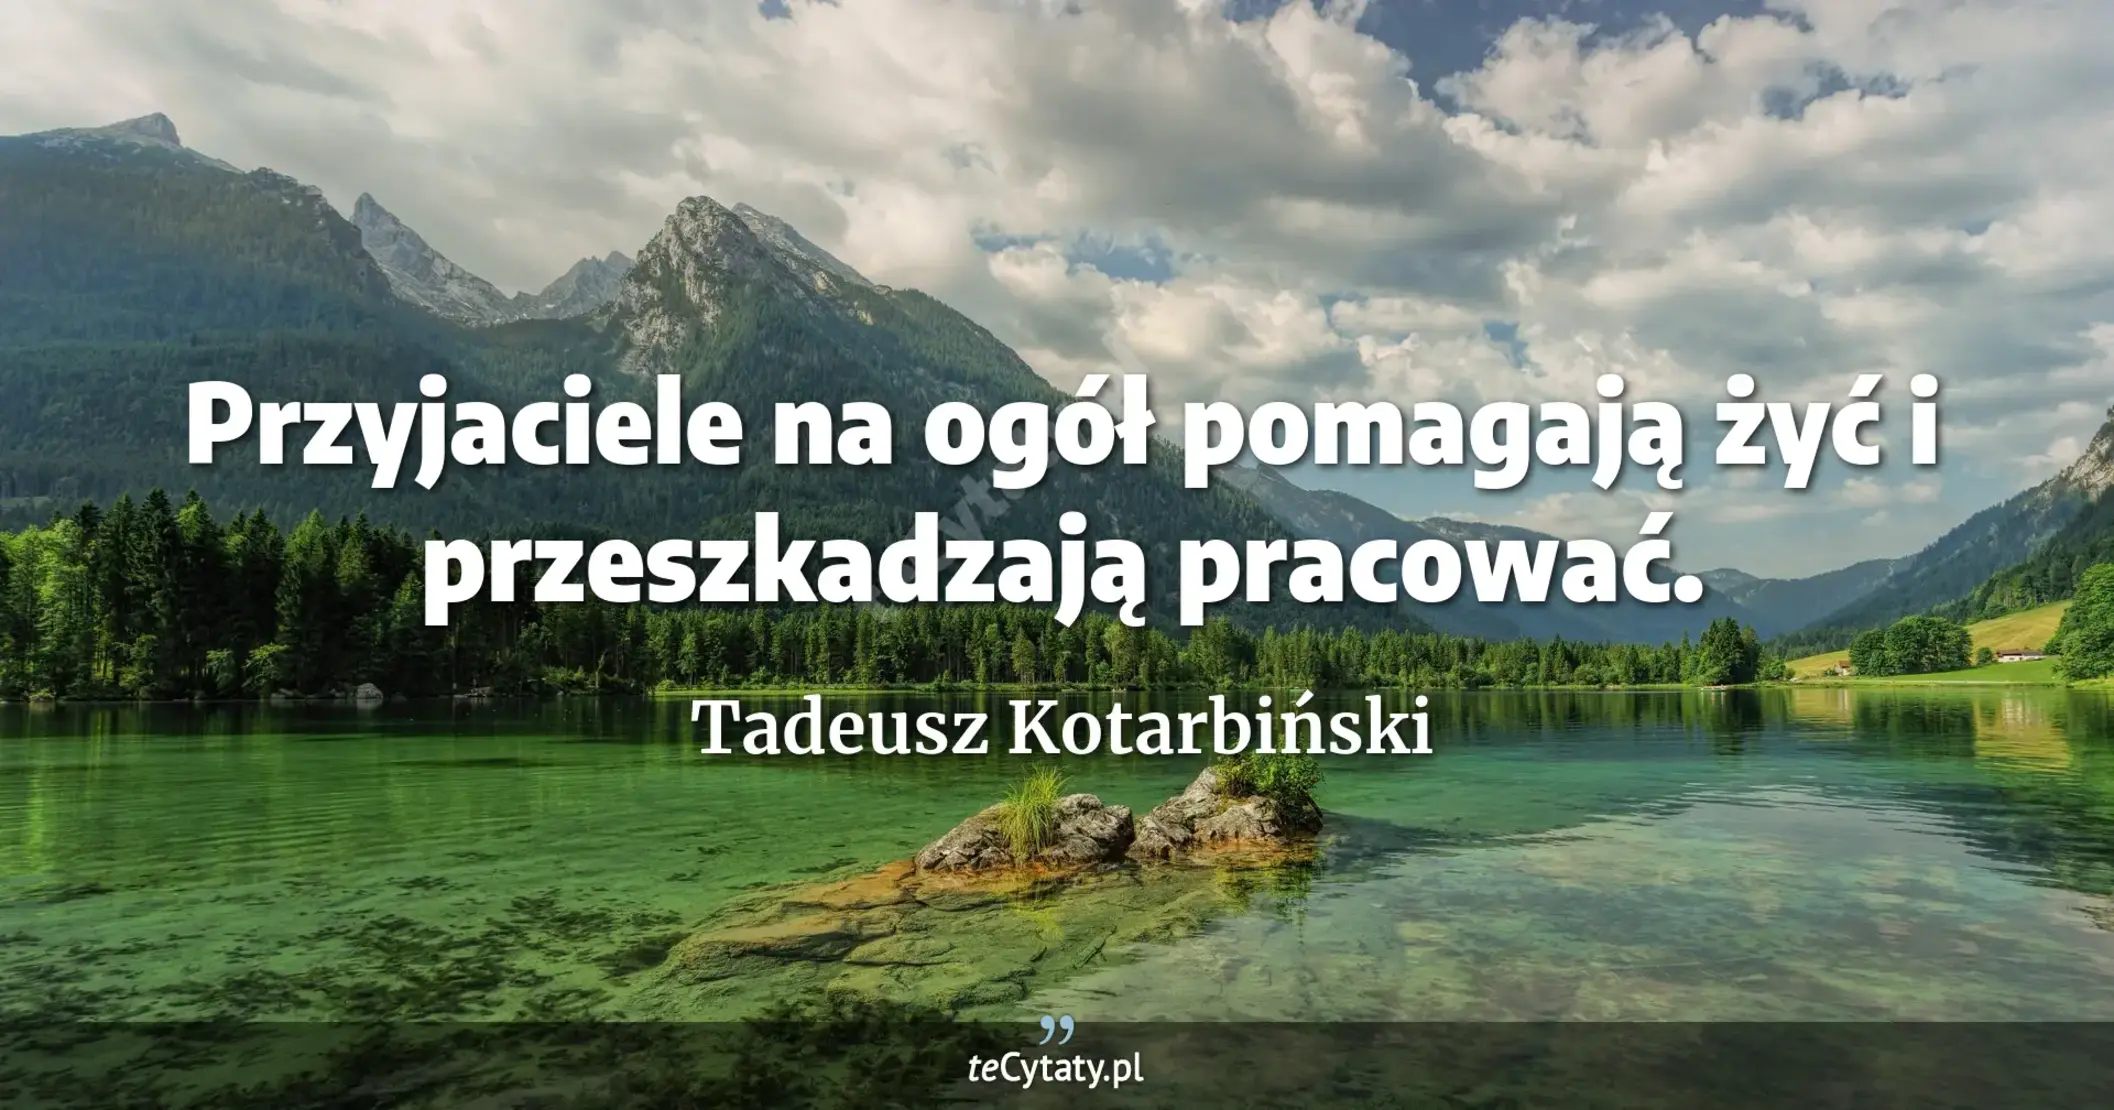 Przyjaciele na ogół pomagają żyć i przeszkadzają pracować. - Tadeusz Kotarbiński